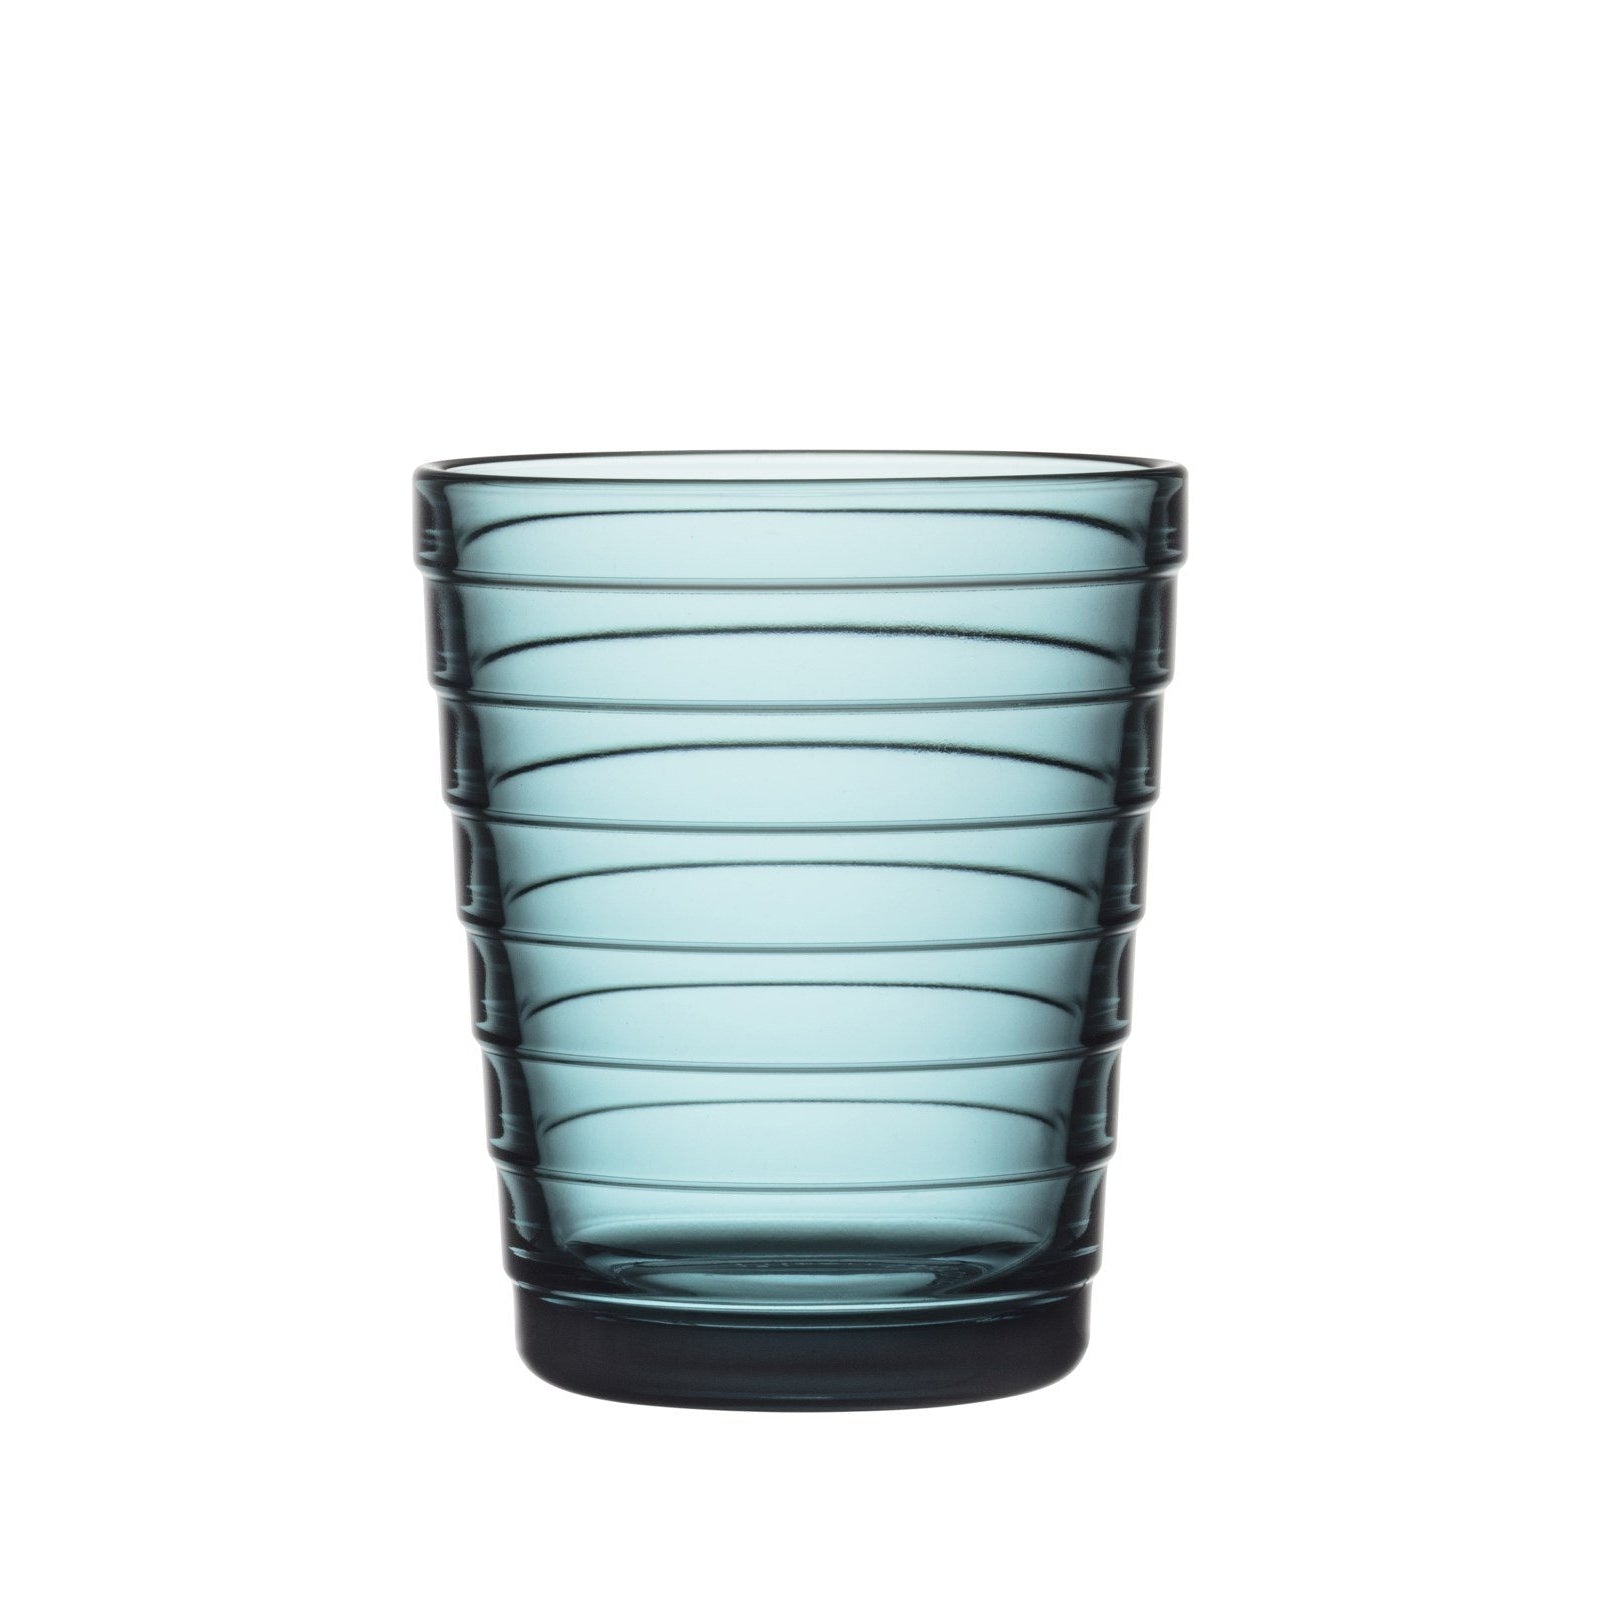 Iittala Aino aalto glas søbel 2 st, 22cl